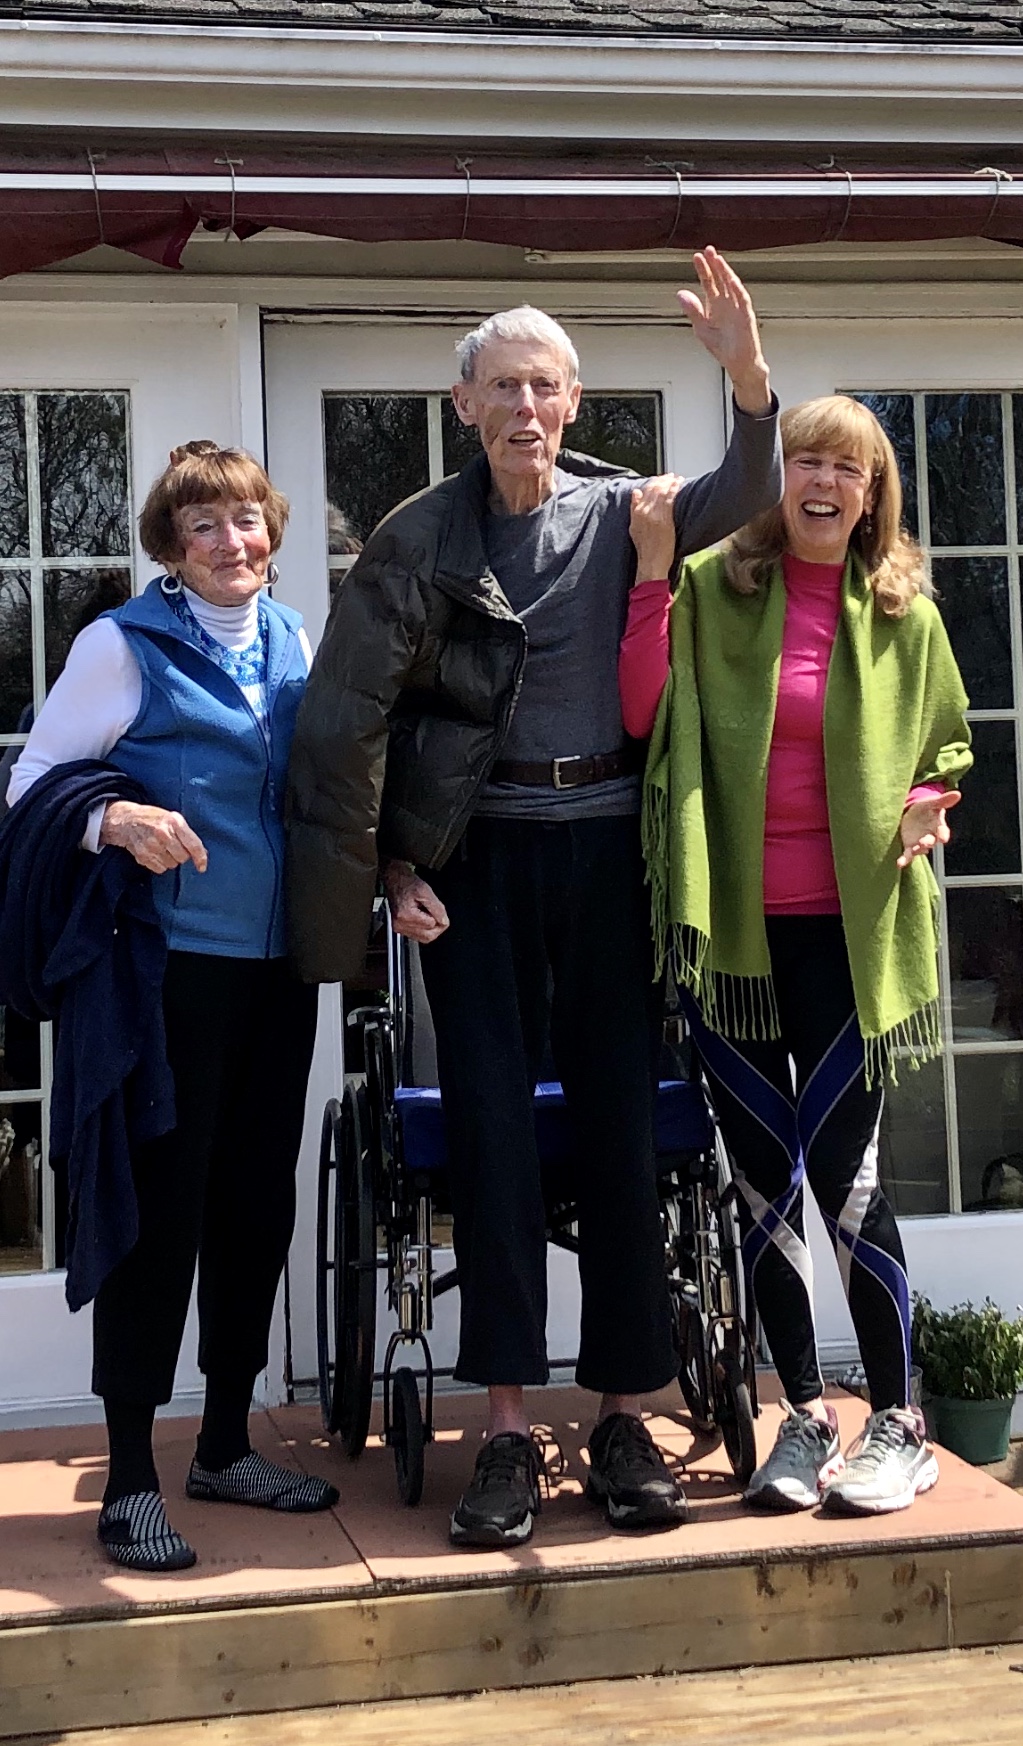 ¡Saludos en el Domingo de Pascua! Peg, Joe y Cathy Walsh saludan a los familiares que visitan desde la seguridad del patio.